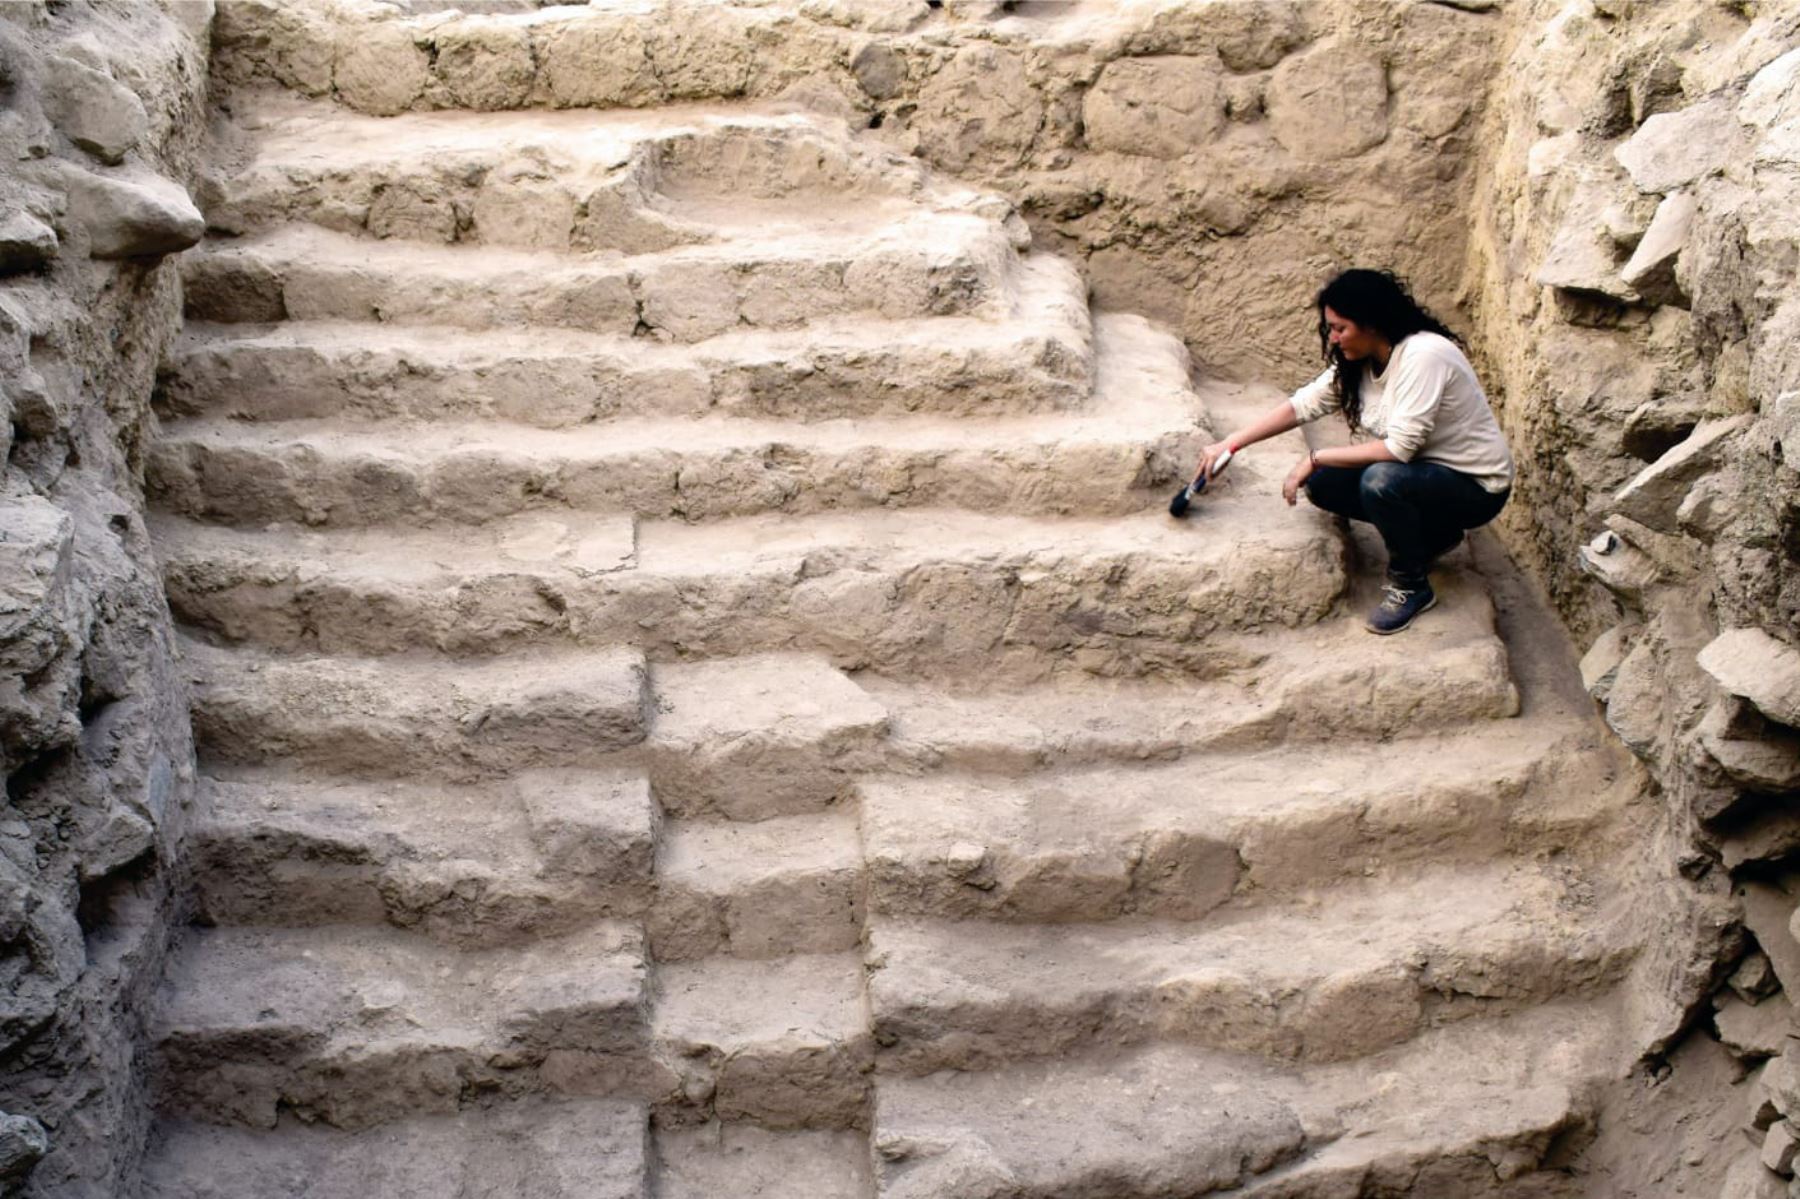 Arqueólogos descubren pirámide de unos 5,000 años de antigüedad en sitio arqueológico Sechín, en Casma, Áncash. Foto: Cortesía Proyecto Arqueológico Sechín